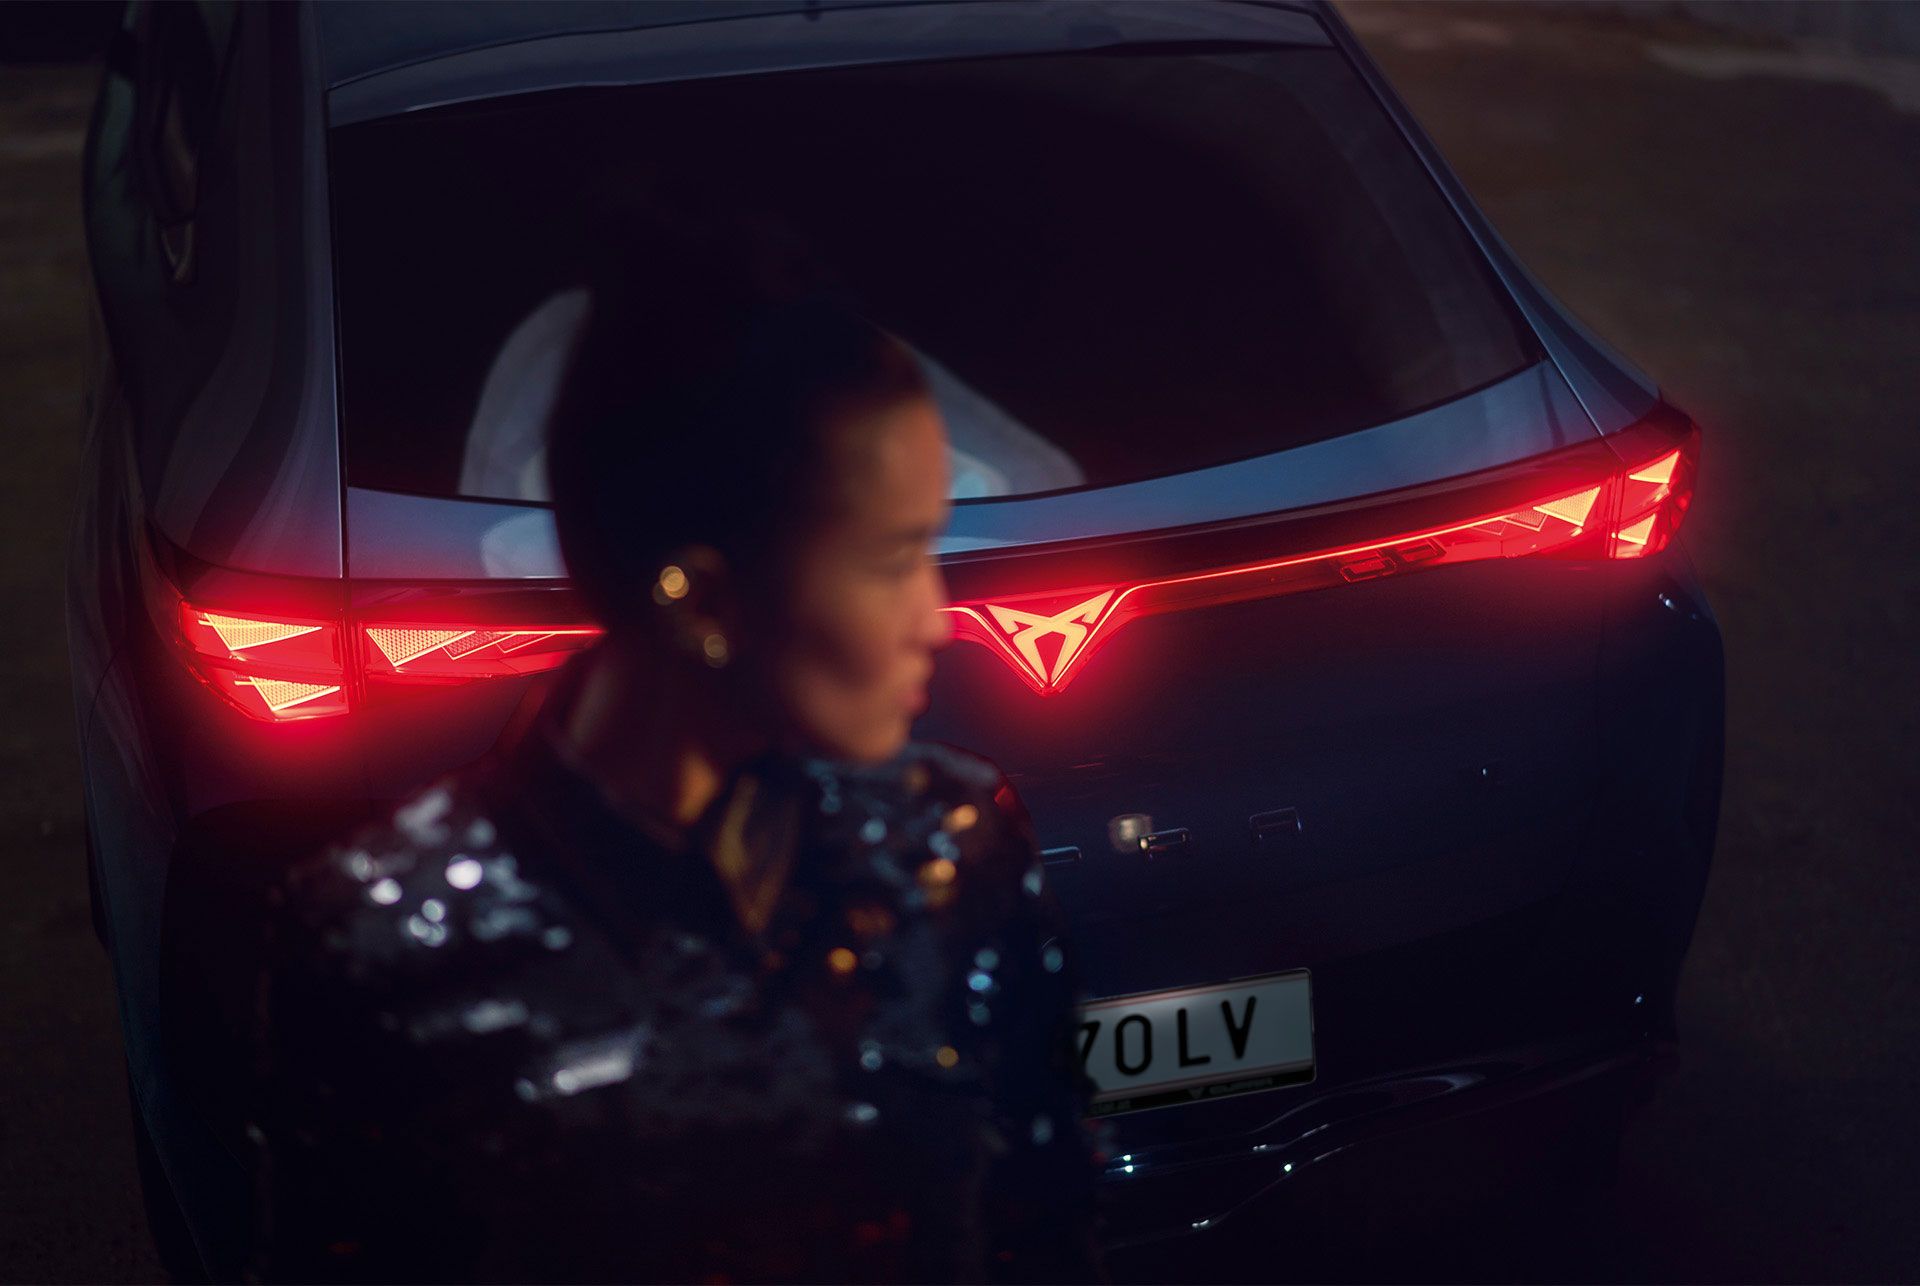 Detailaufnahme vom Heck eines CUPRA Tavascan mit durchgehender Heckbeleuchtung, eine Frau steht neben dem Fahrzeug.